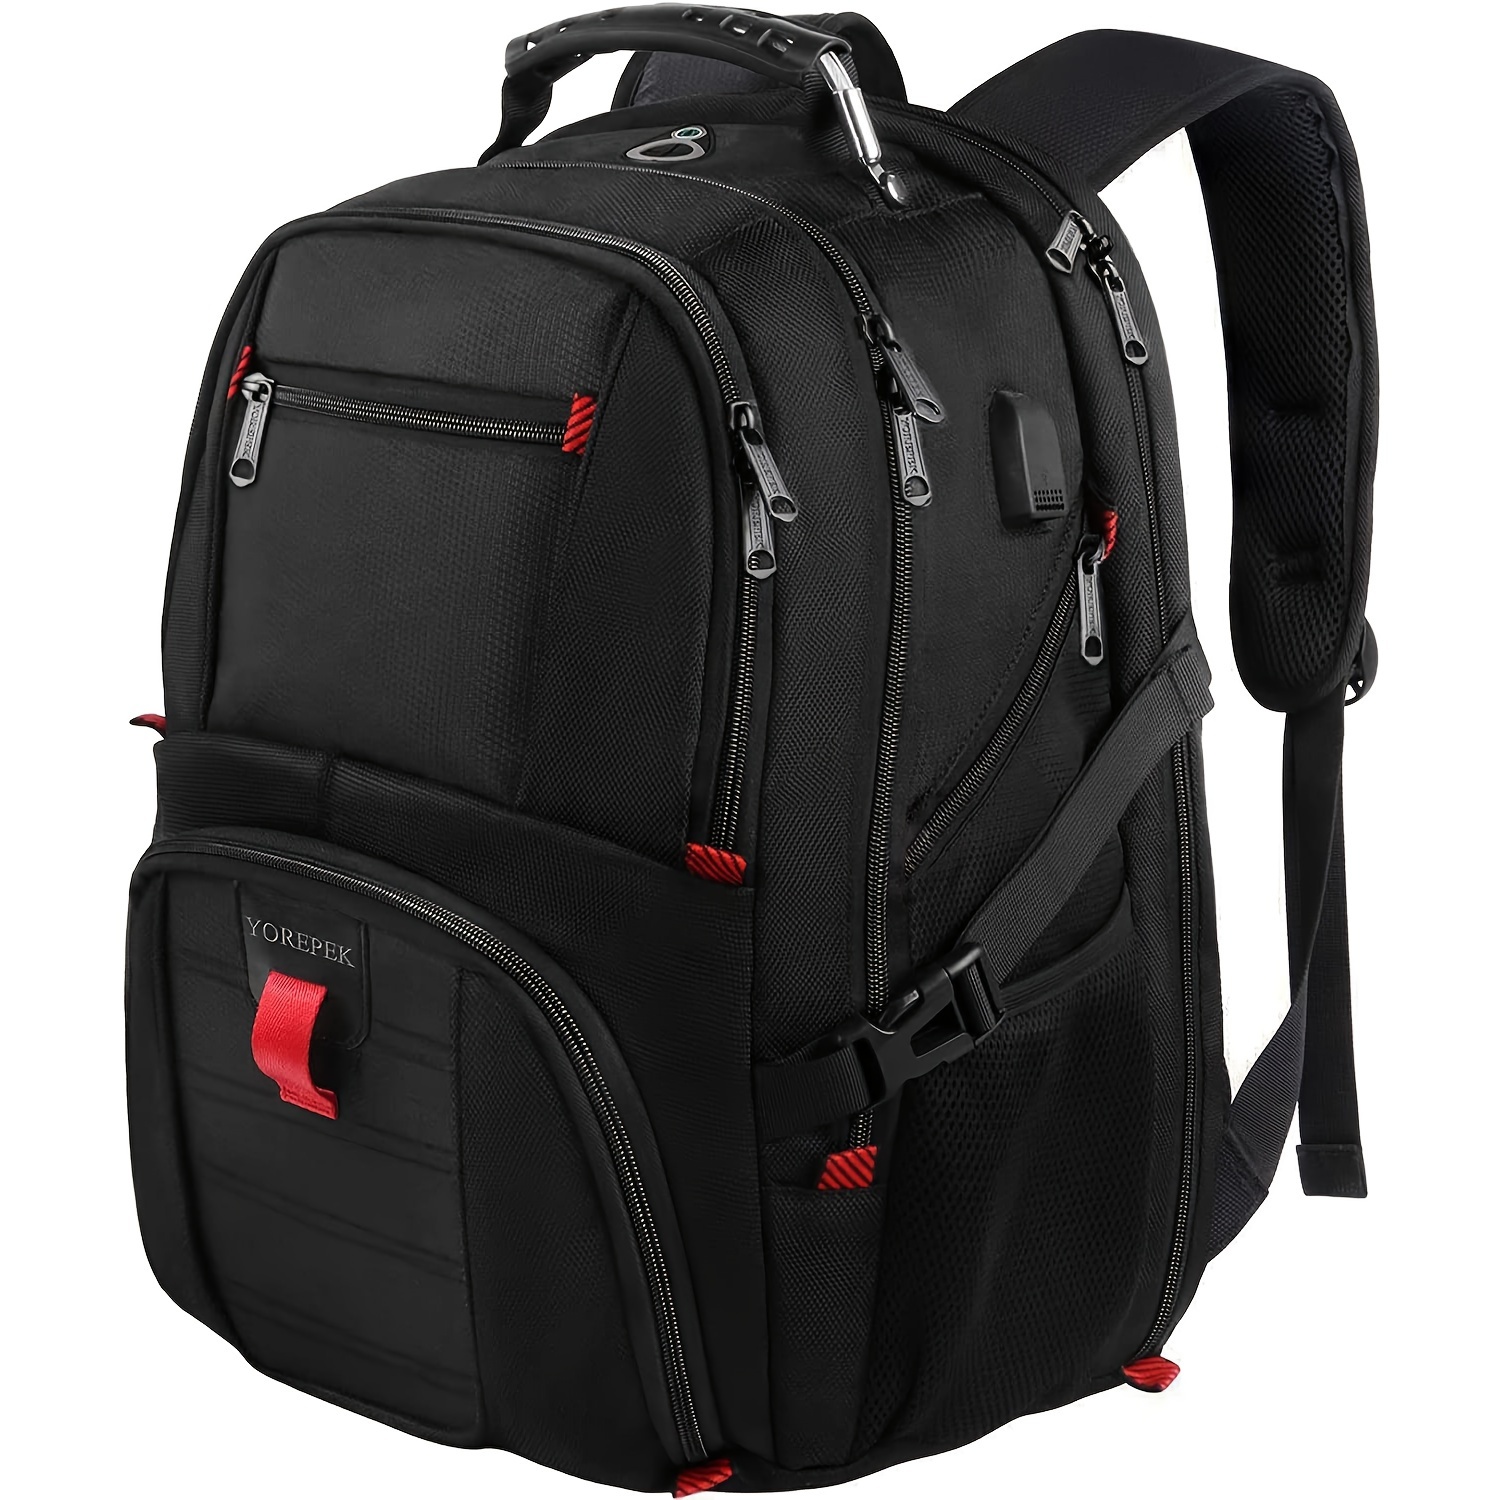  Mochila para hombre, mochila de viaje extra grande de 50 litros  con puerto de carga USB, mochila para laptop de 17 pulgadas, resistente al  agua, gran capacidad, bolsa de computadora resistente